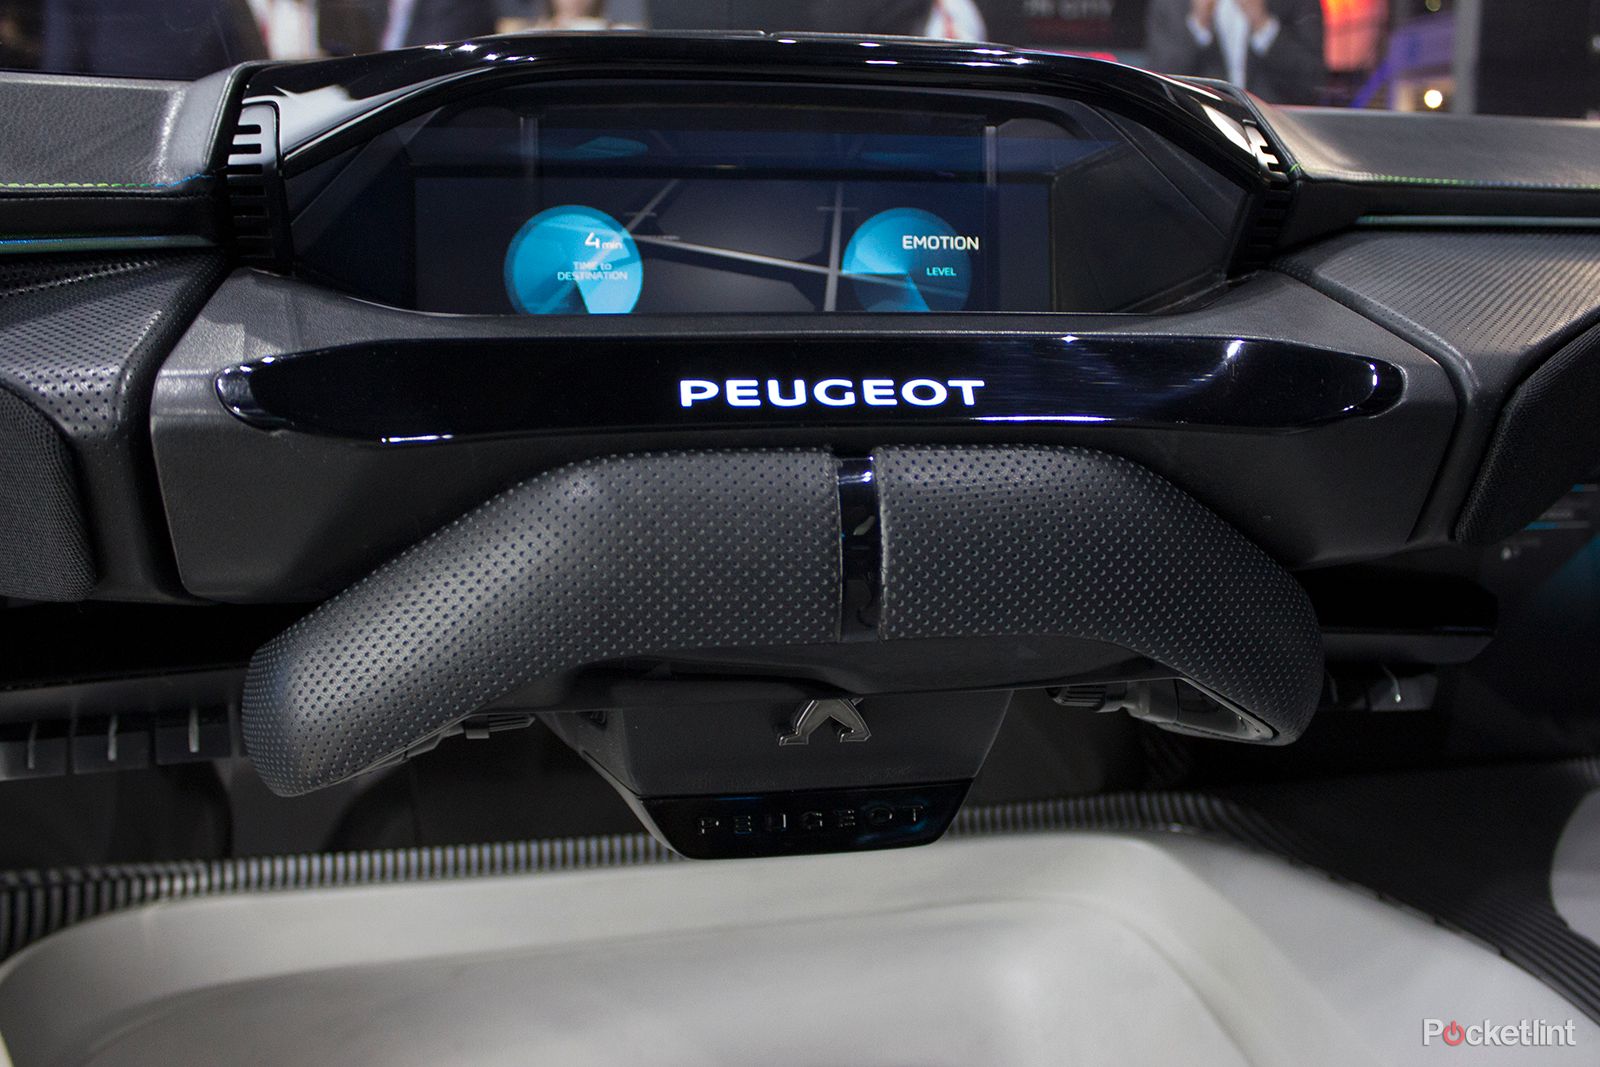 stunning instinct concept car shows peugeot s vision of an autonomous driving future image 6